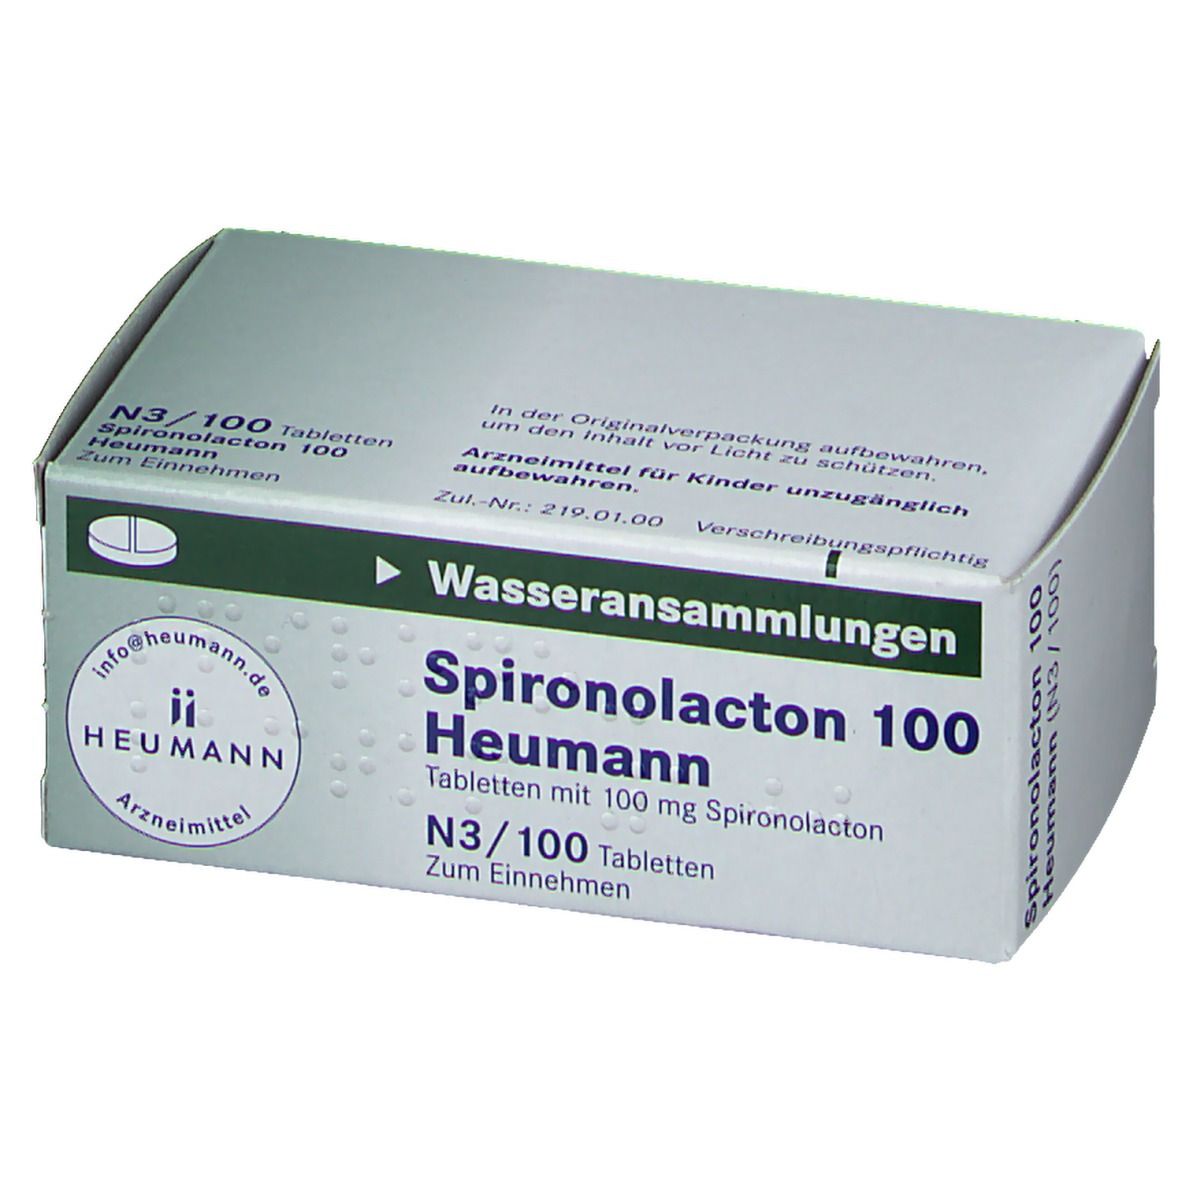 Spironolacton 100 Heumann